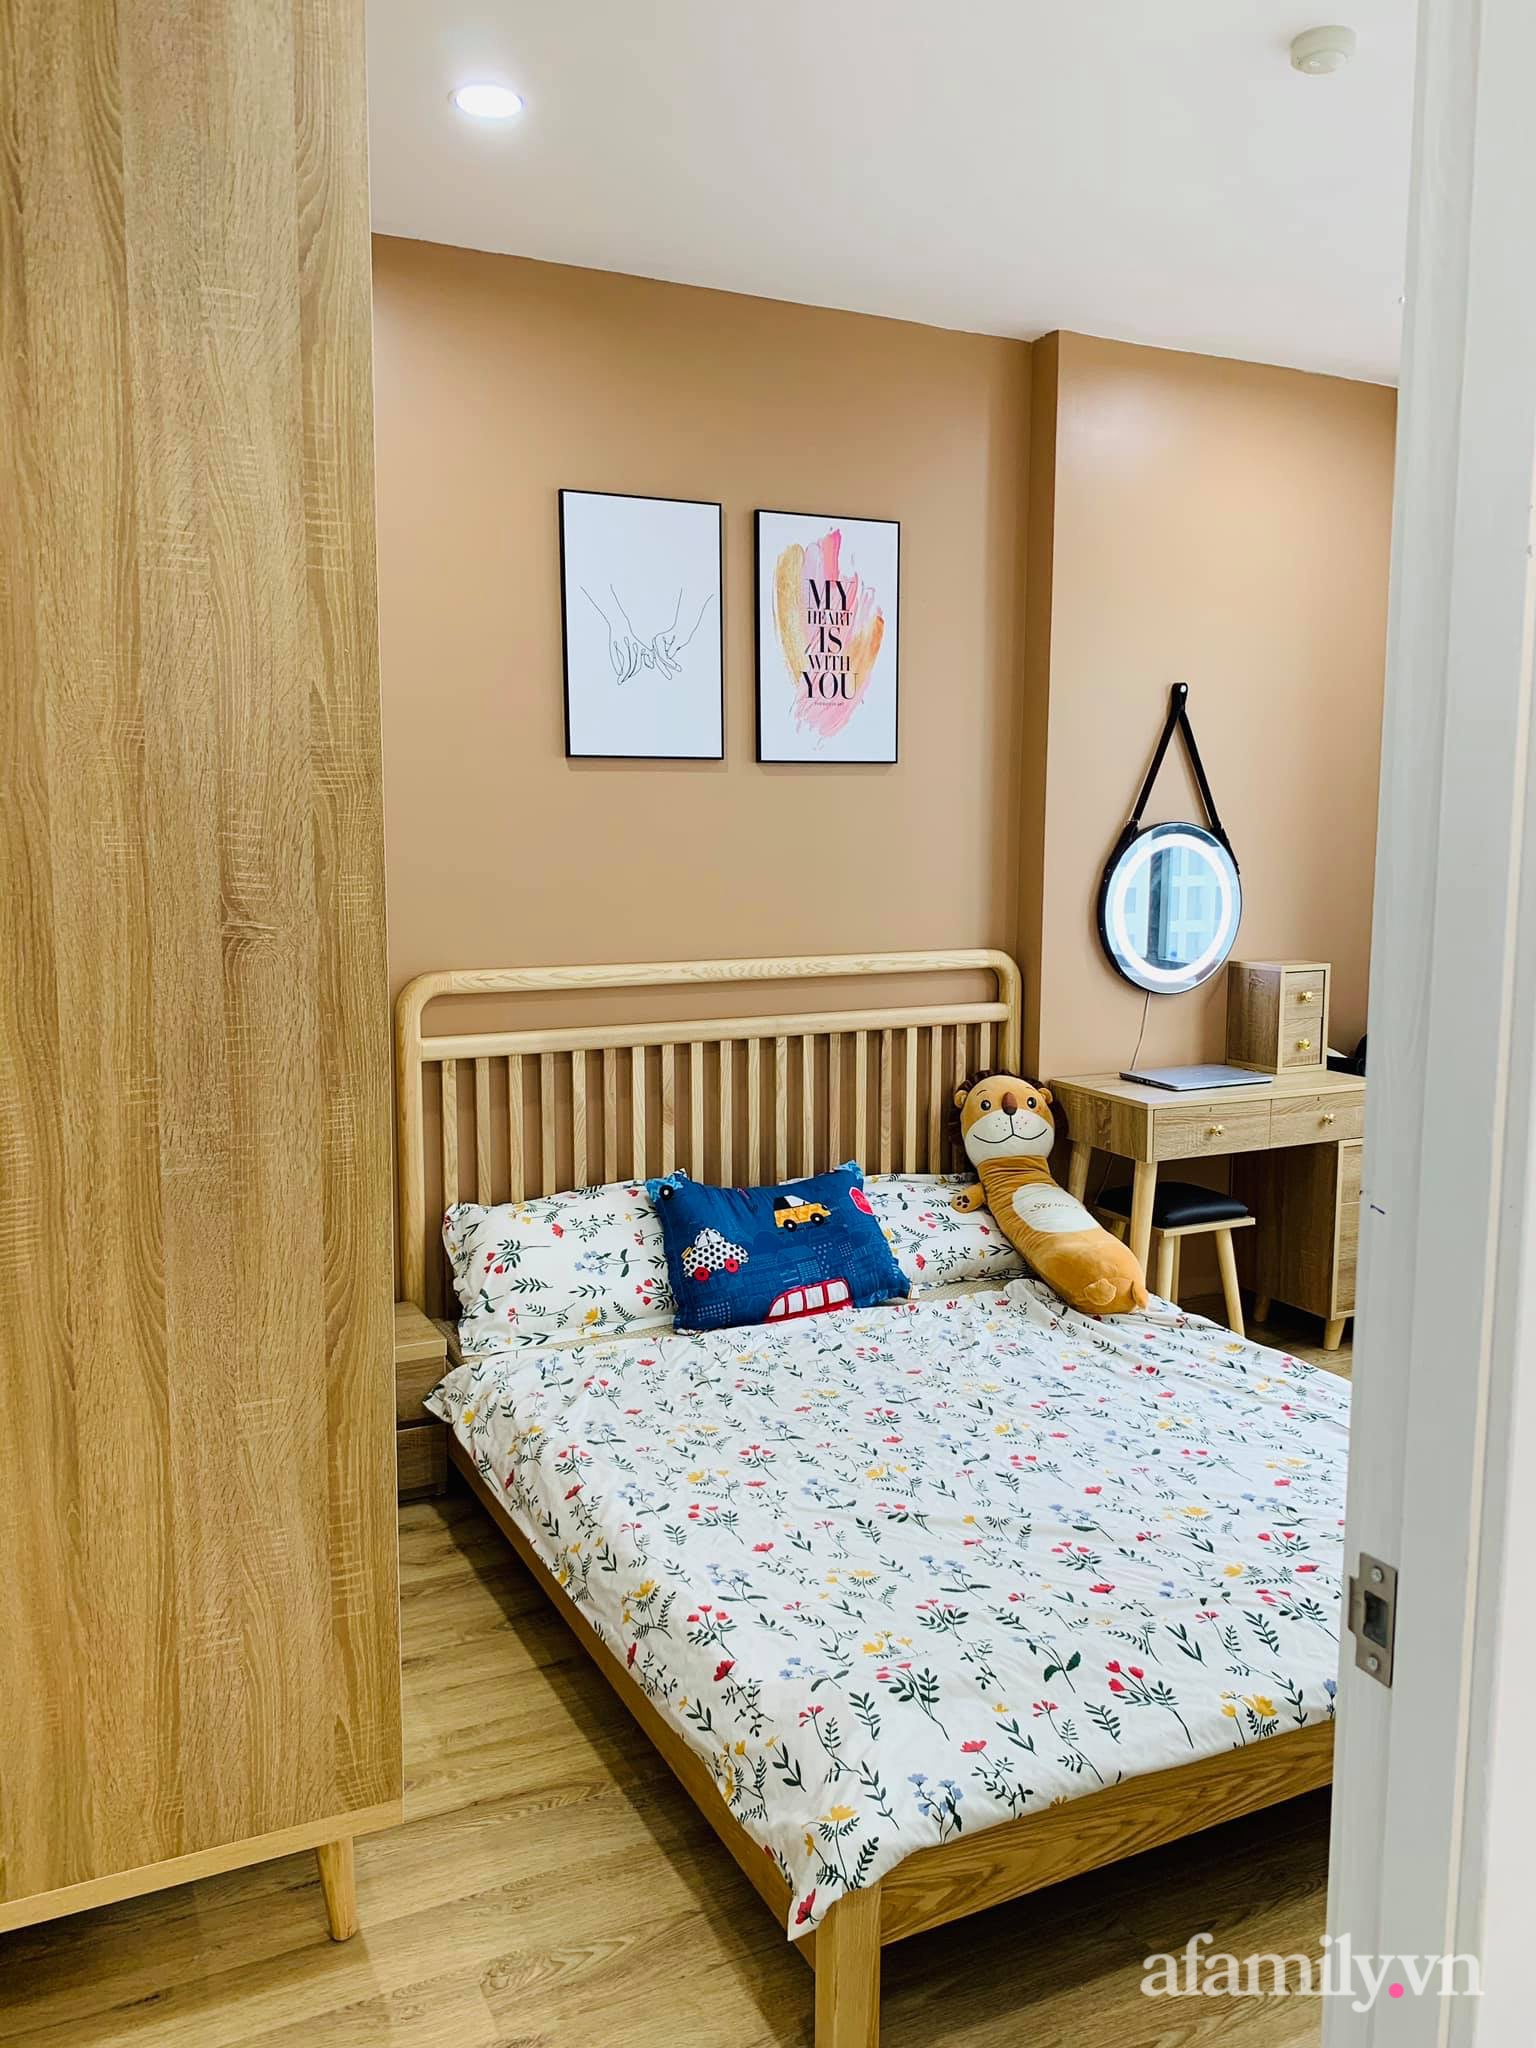  Căn phòng ngủ master được decor xinh xắn với nội thất gỗ. Điểm nhấn nhẹ nhàng tự chăn ga giúp không gian riêng tư và thư giãn hơn. Các không gian dù có diện tích khiêm tốn nhưng ngập tràn ánh sáng tự nhiên.